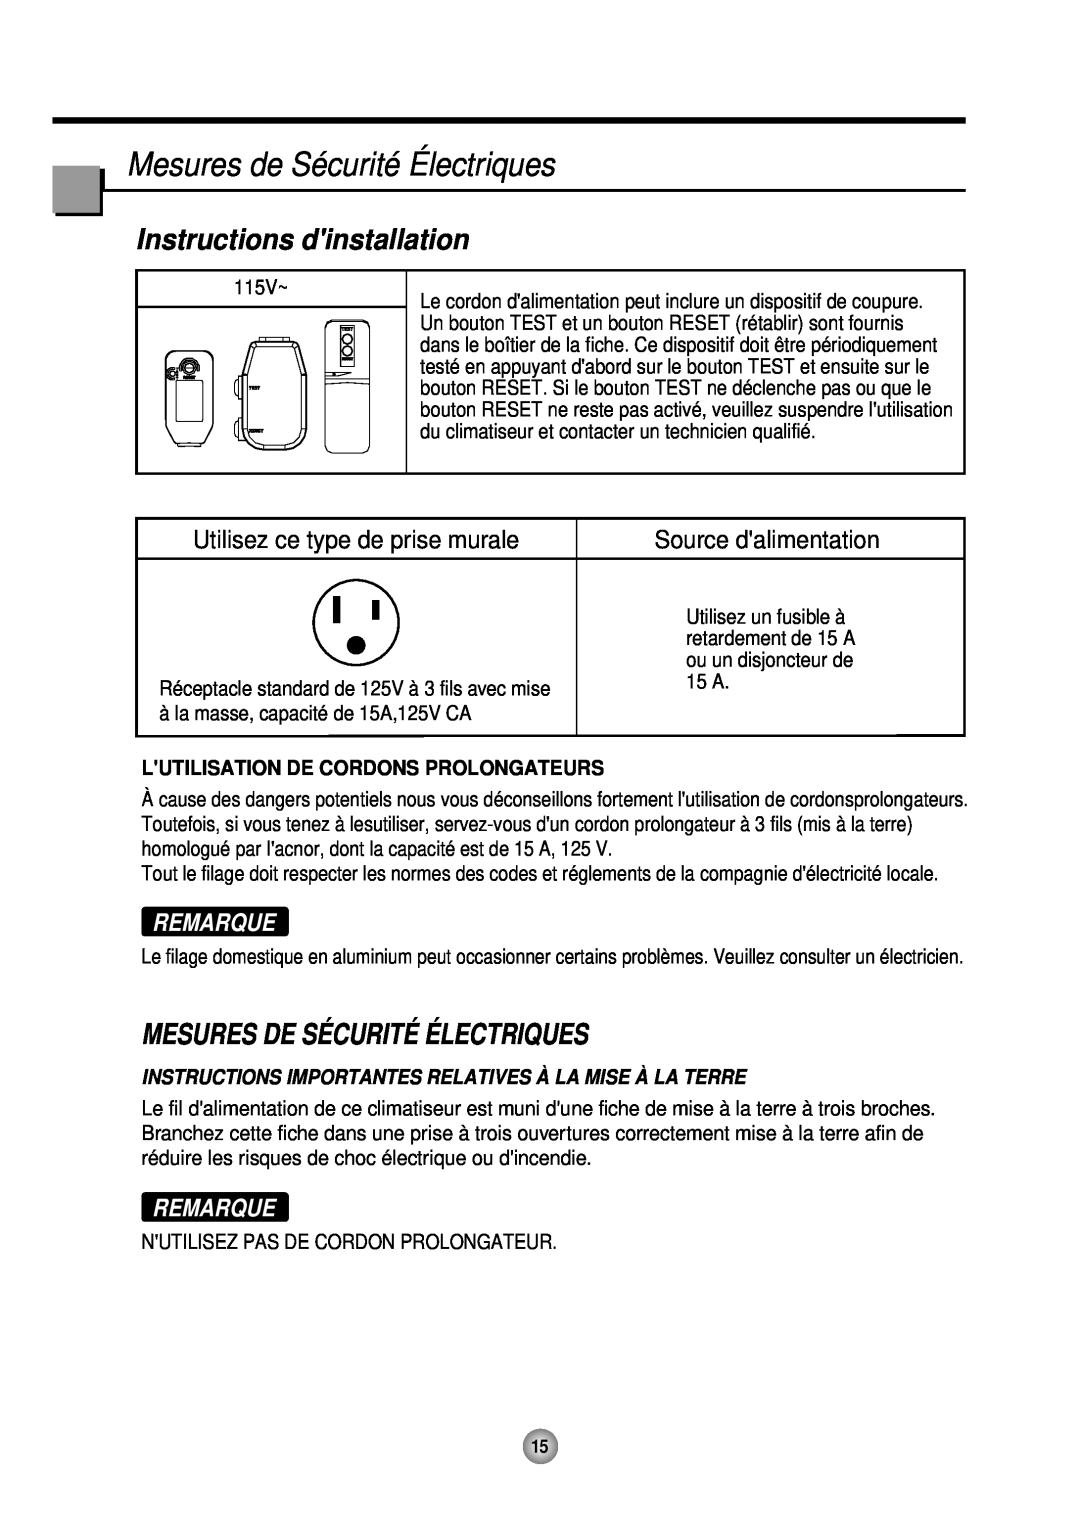 Friedrich CP12 Mesures de Sécurité Électriques, Instructions dinstallation, Mesures De Sé Curité É Lectriques, Remarque 